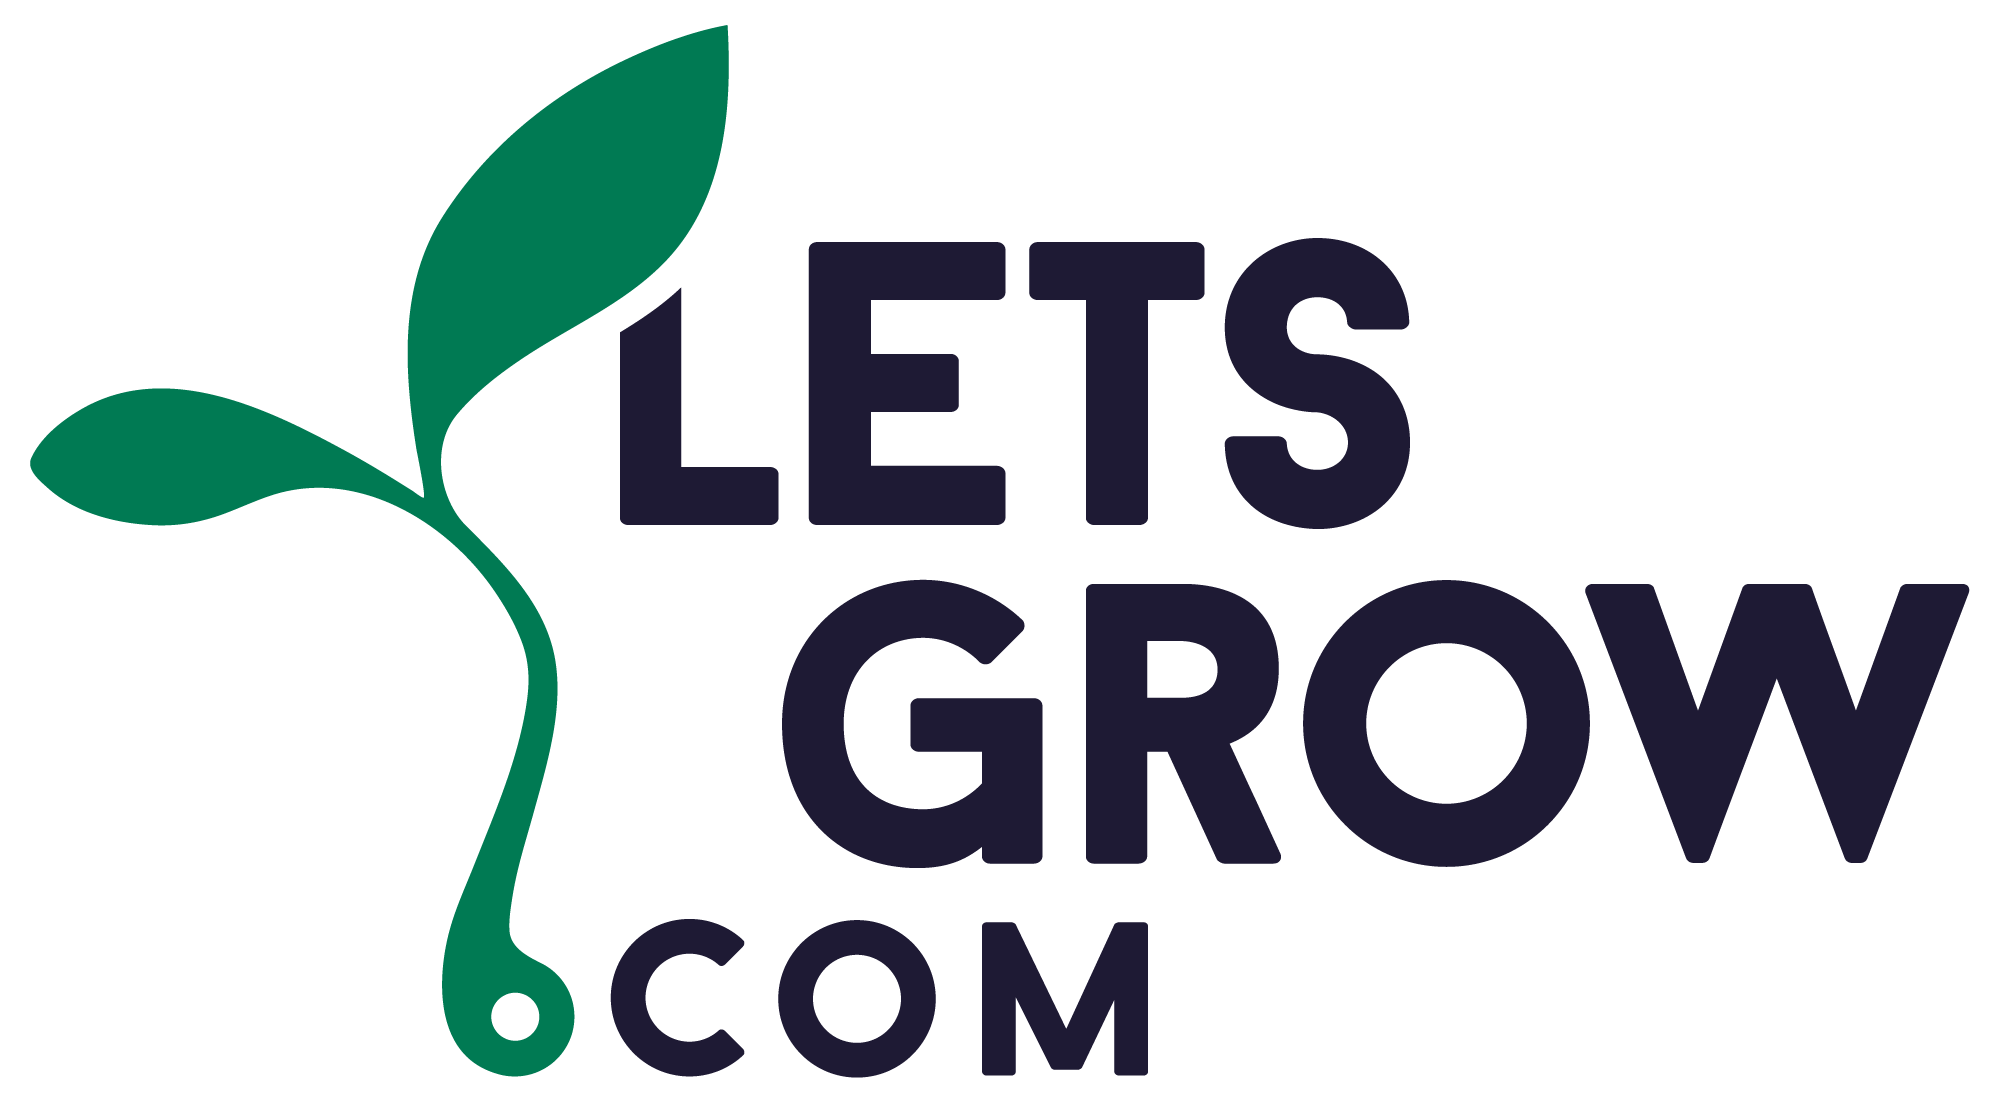 LetsGrow.com logo